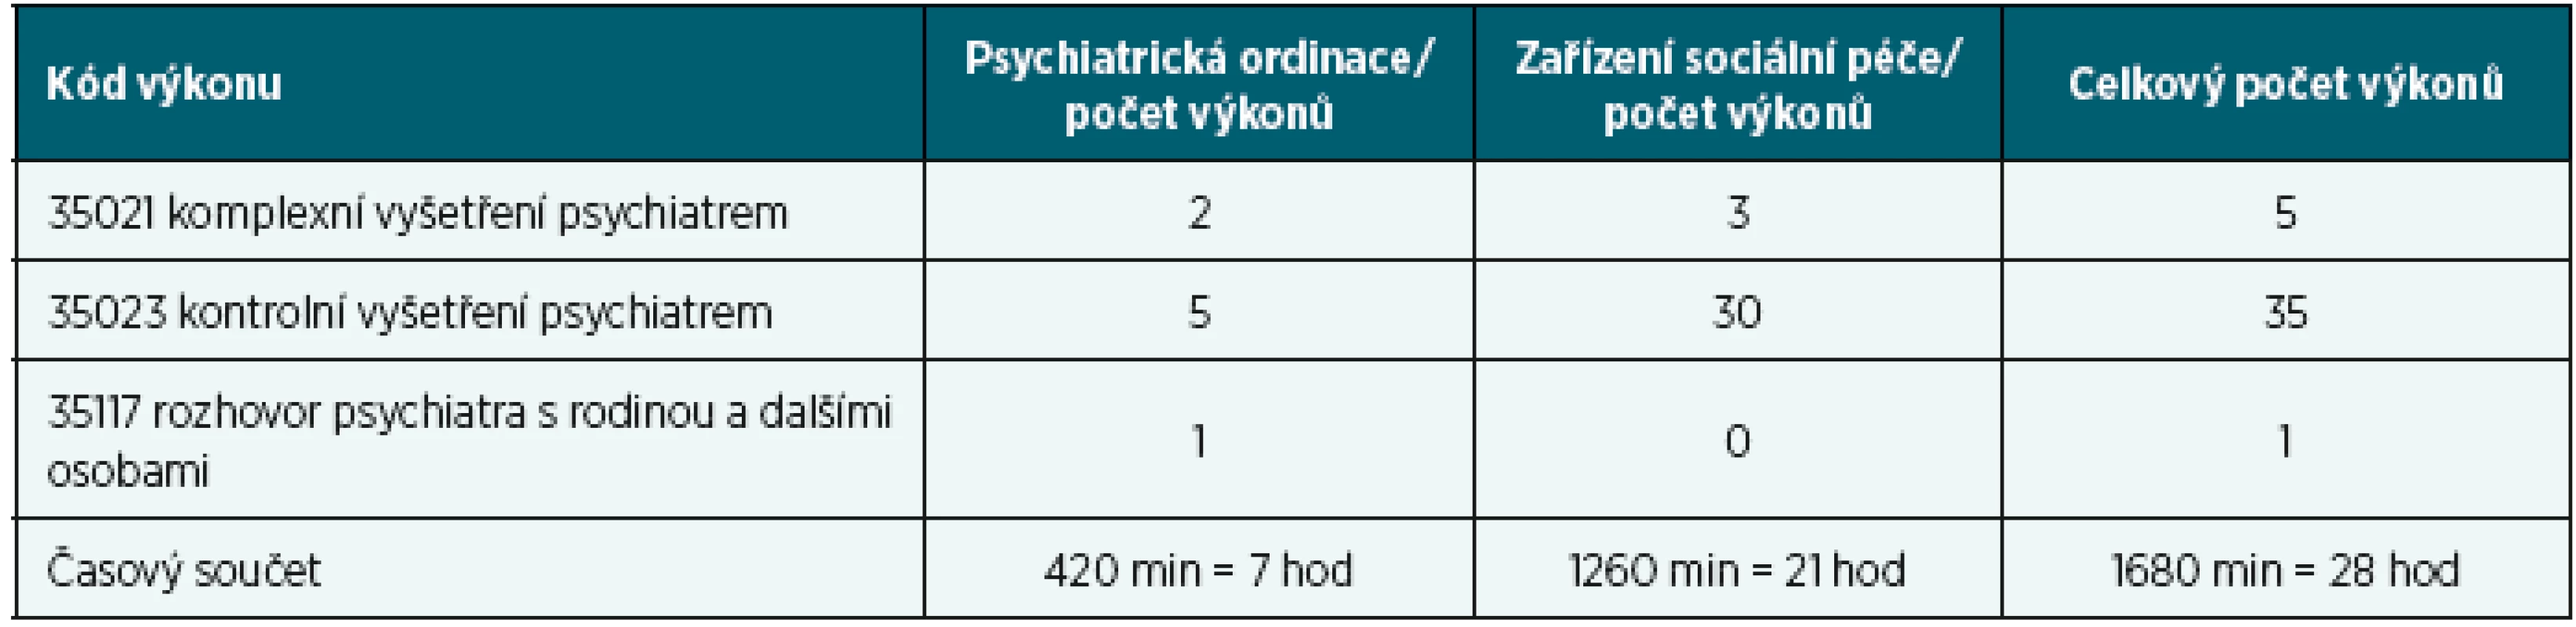 Jeden den jednoho psychiatra (11. 12. 2014, jen pojištěnci VZP) podle místa působení